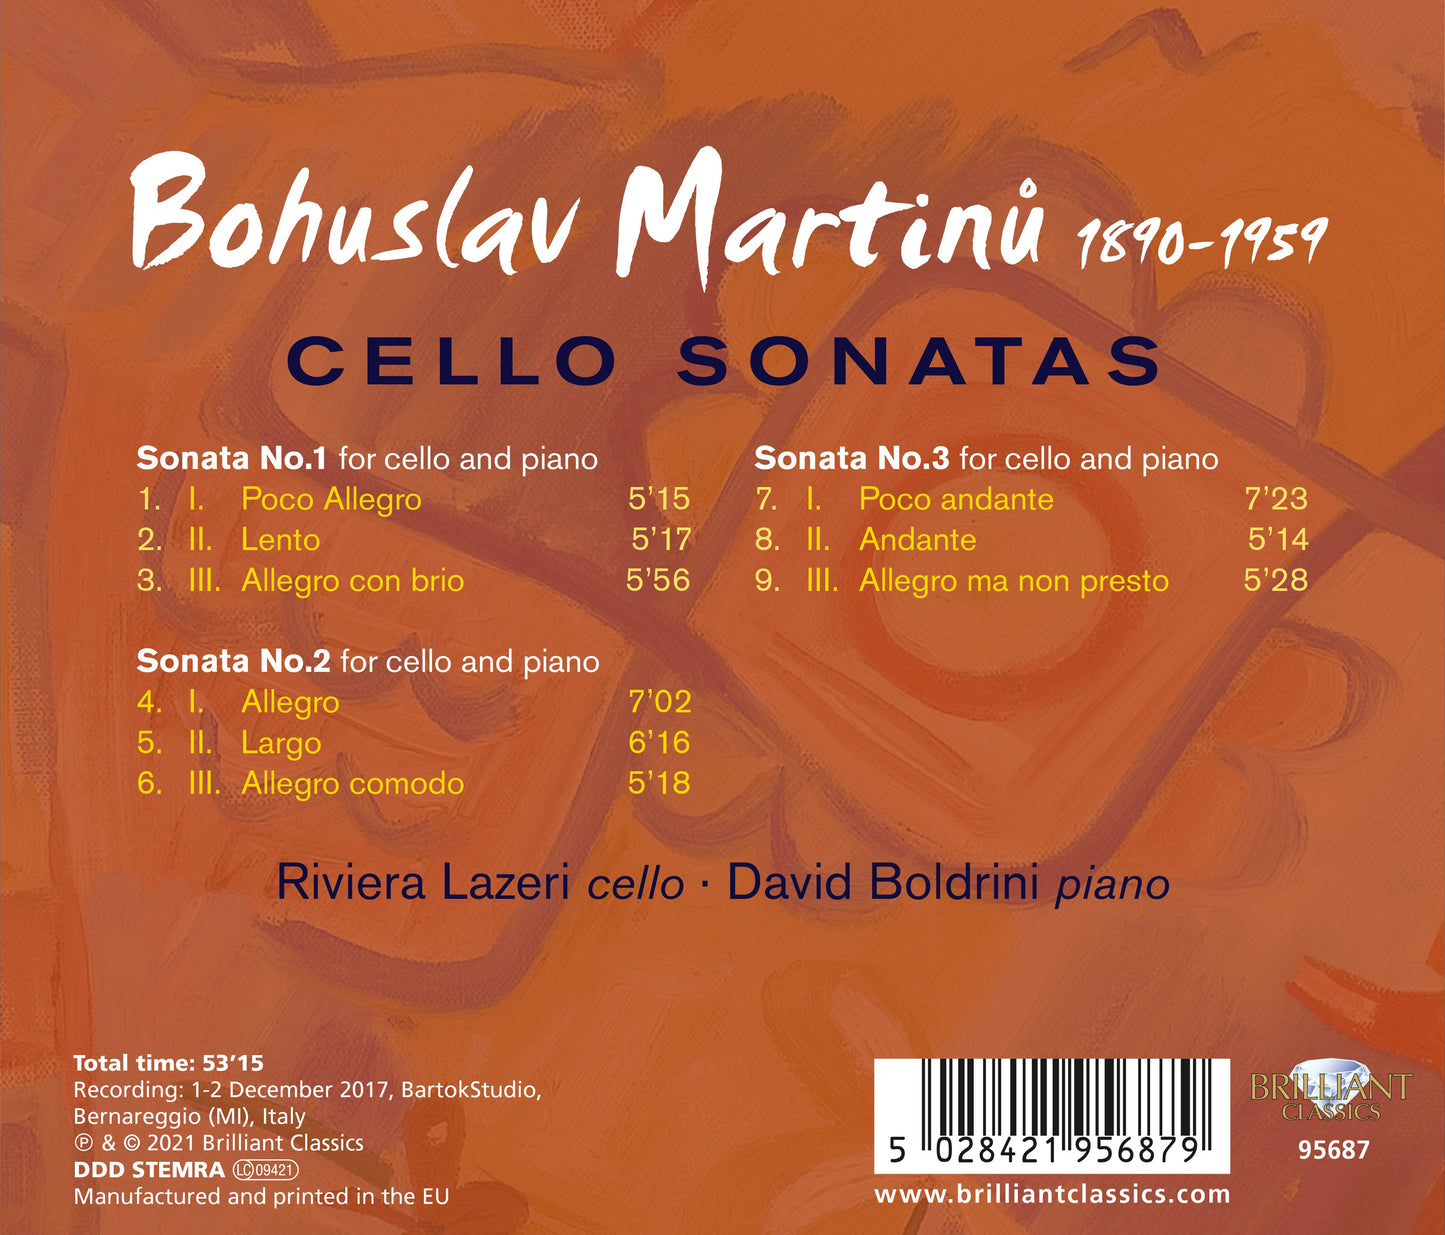 Martinu: Cello Sonatas